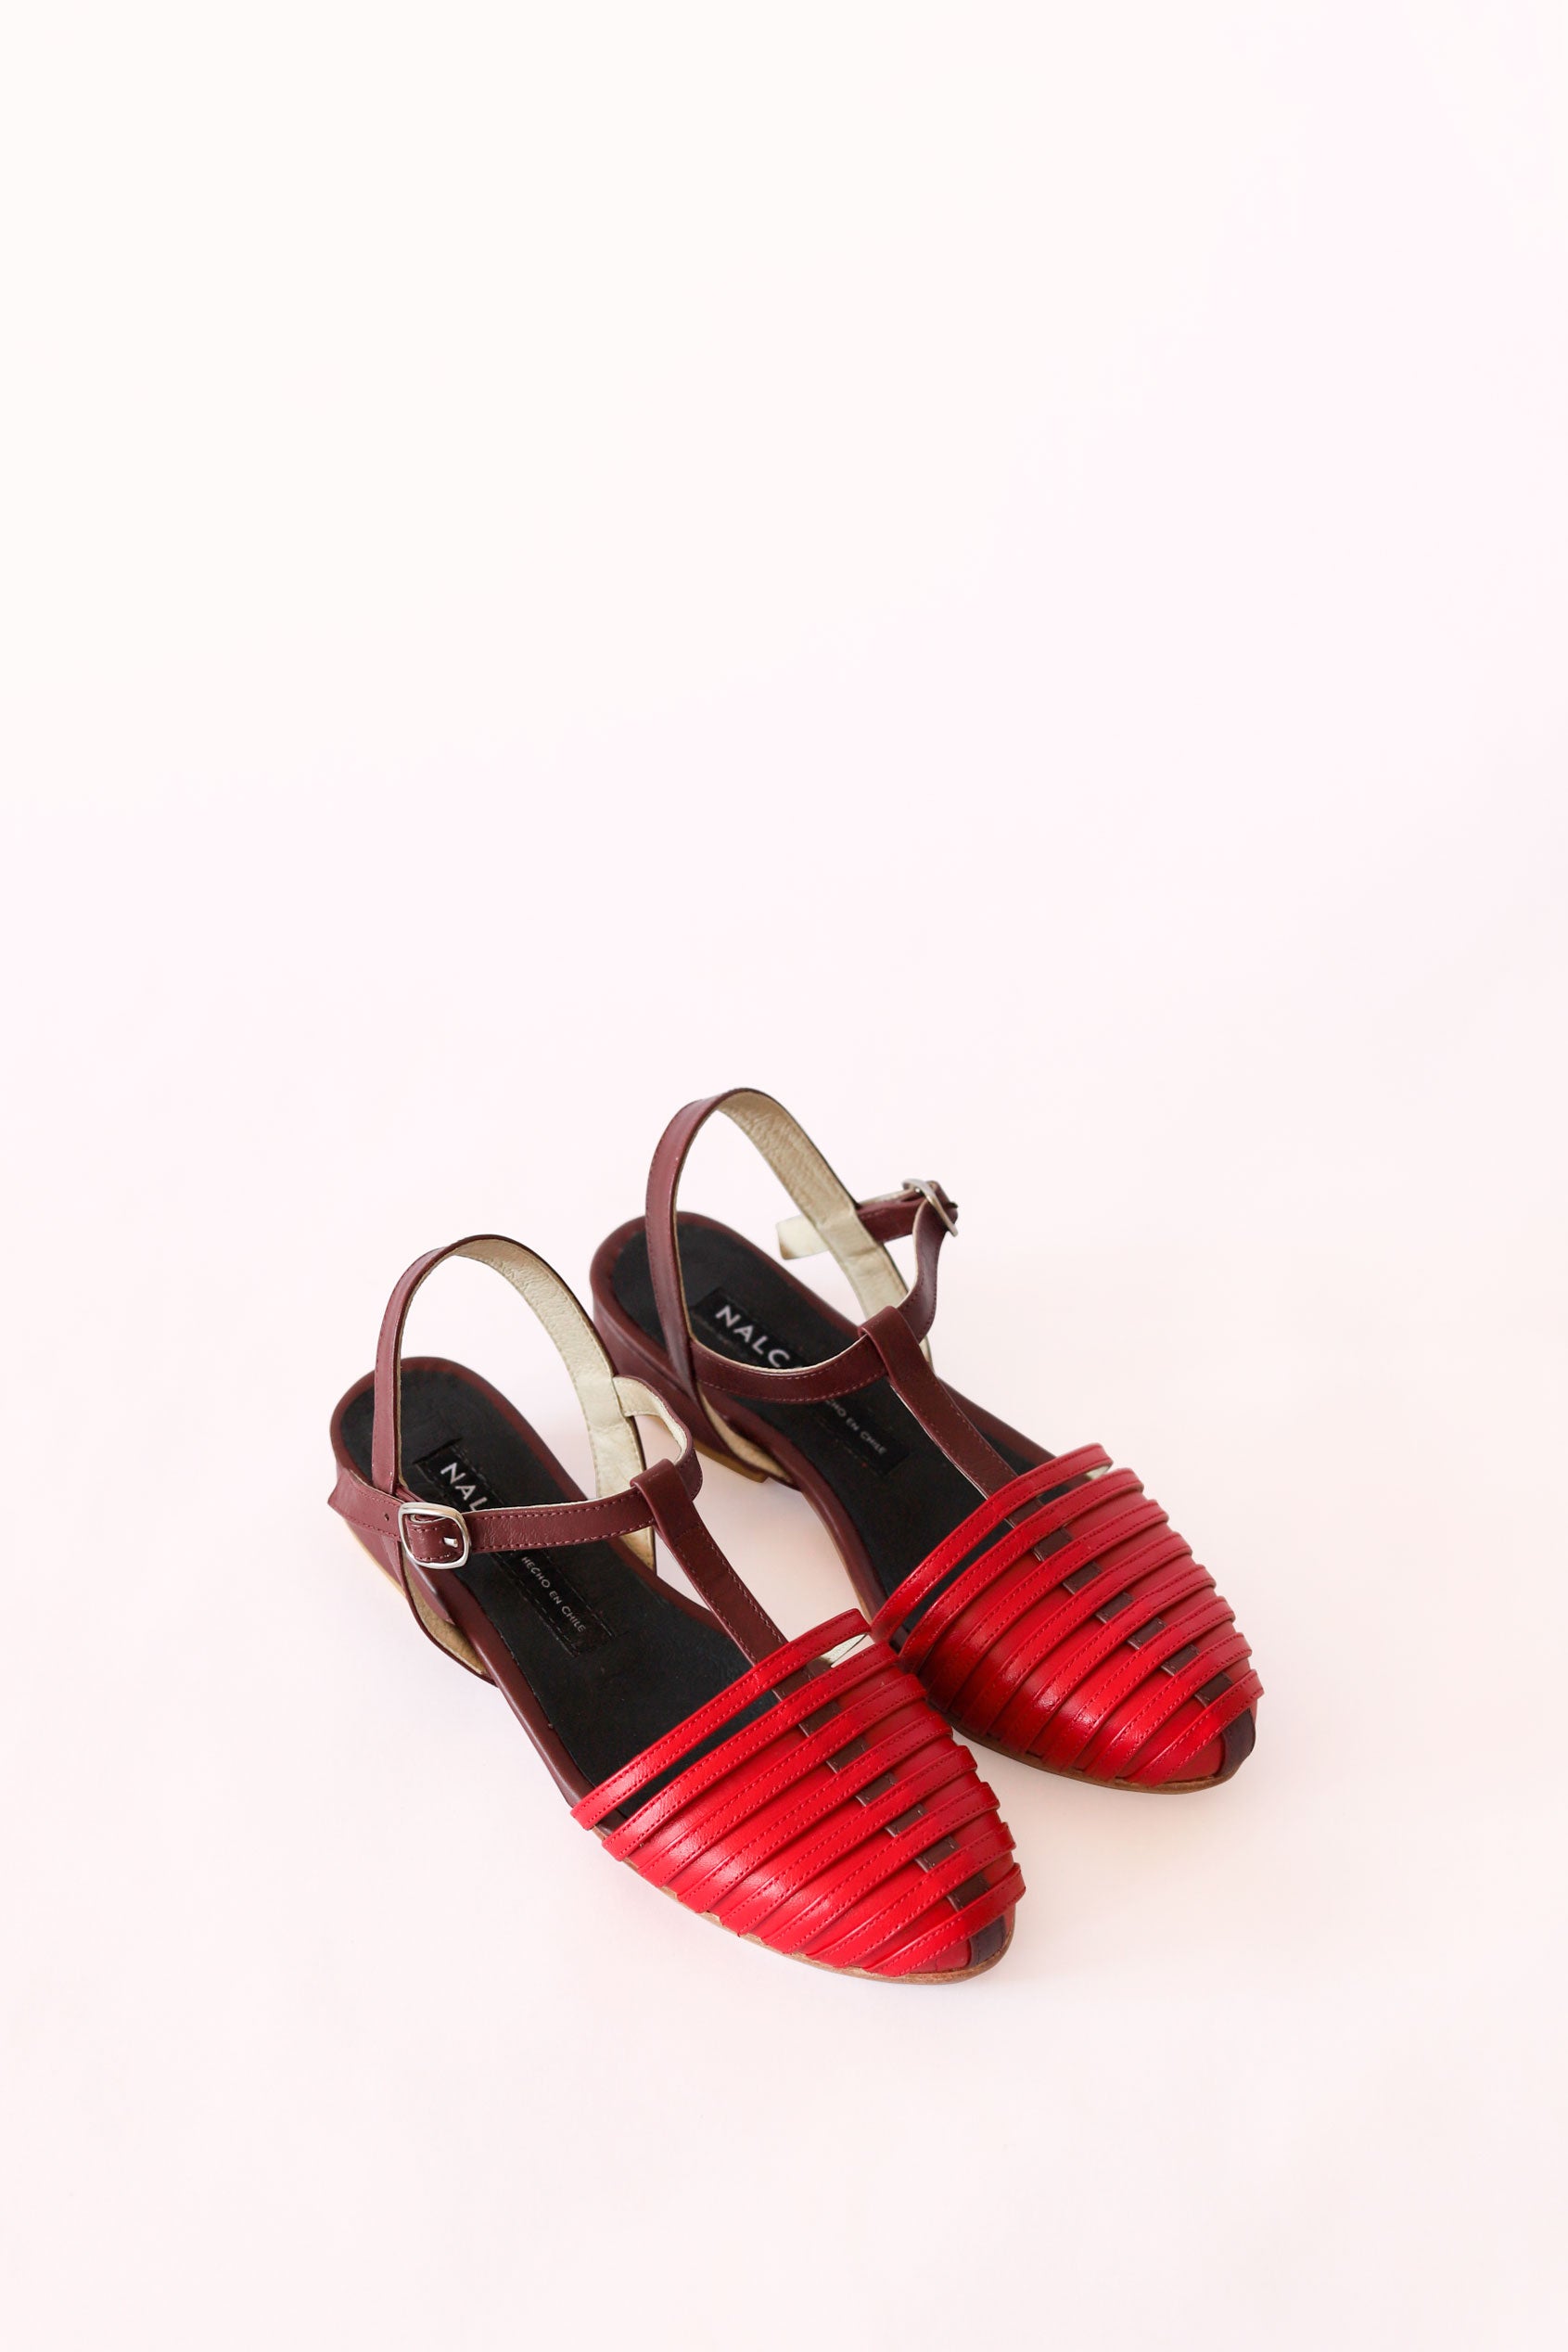 Zapato Coyan rojo burdeo